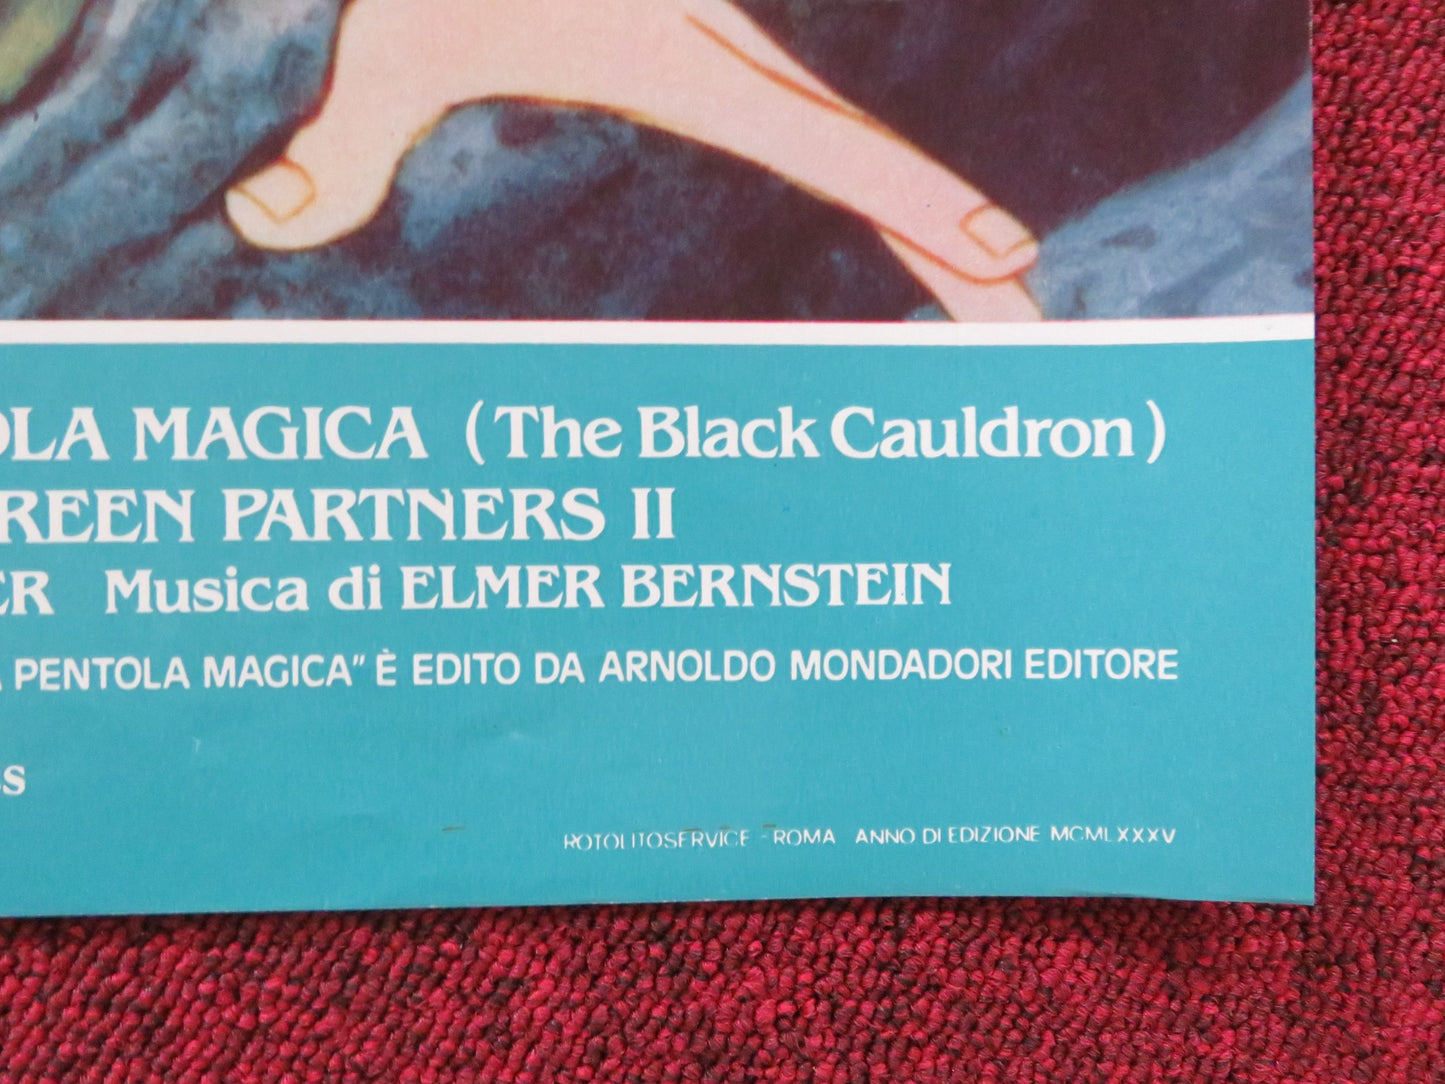 THE BLACK CAULDRON - B ITALIAN FOTOBUSTA POSTER DISNEY GRANT BARDSLEY 1985